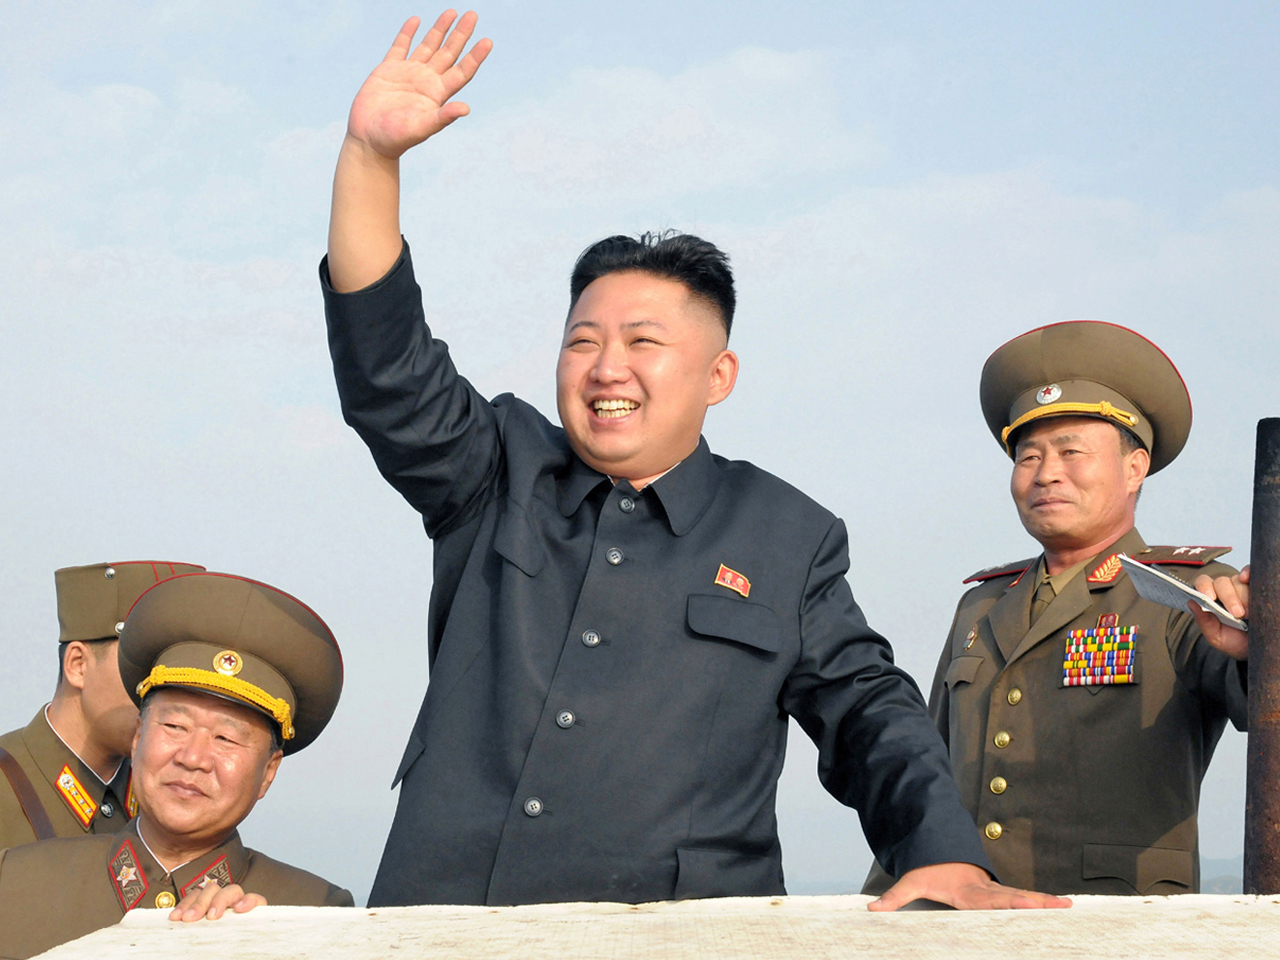 Kim Jong Un Google image from http://ridgepoliticalreview.com/wp-content/uploads/2014/02/KimJongUn.jpg/